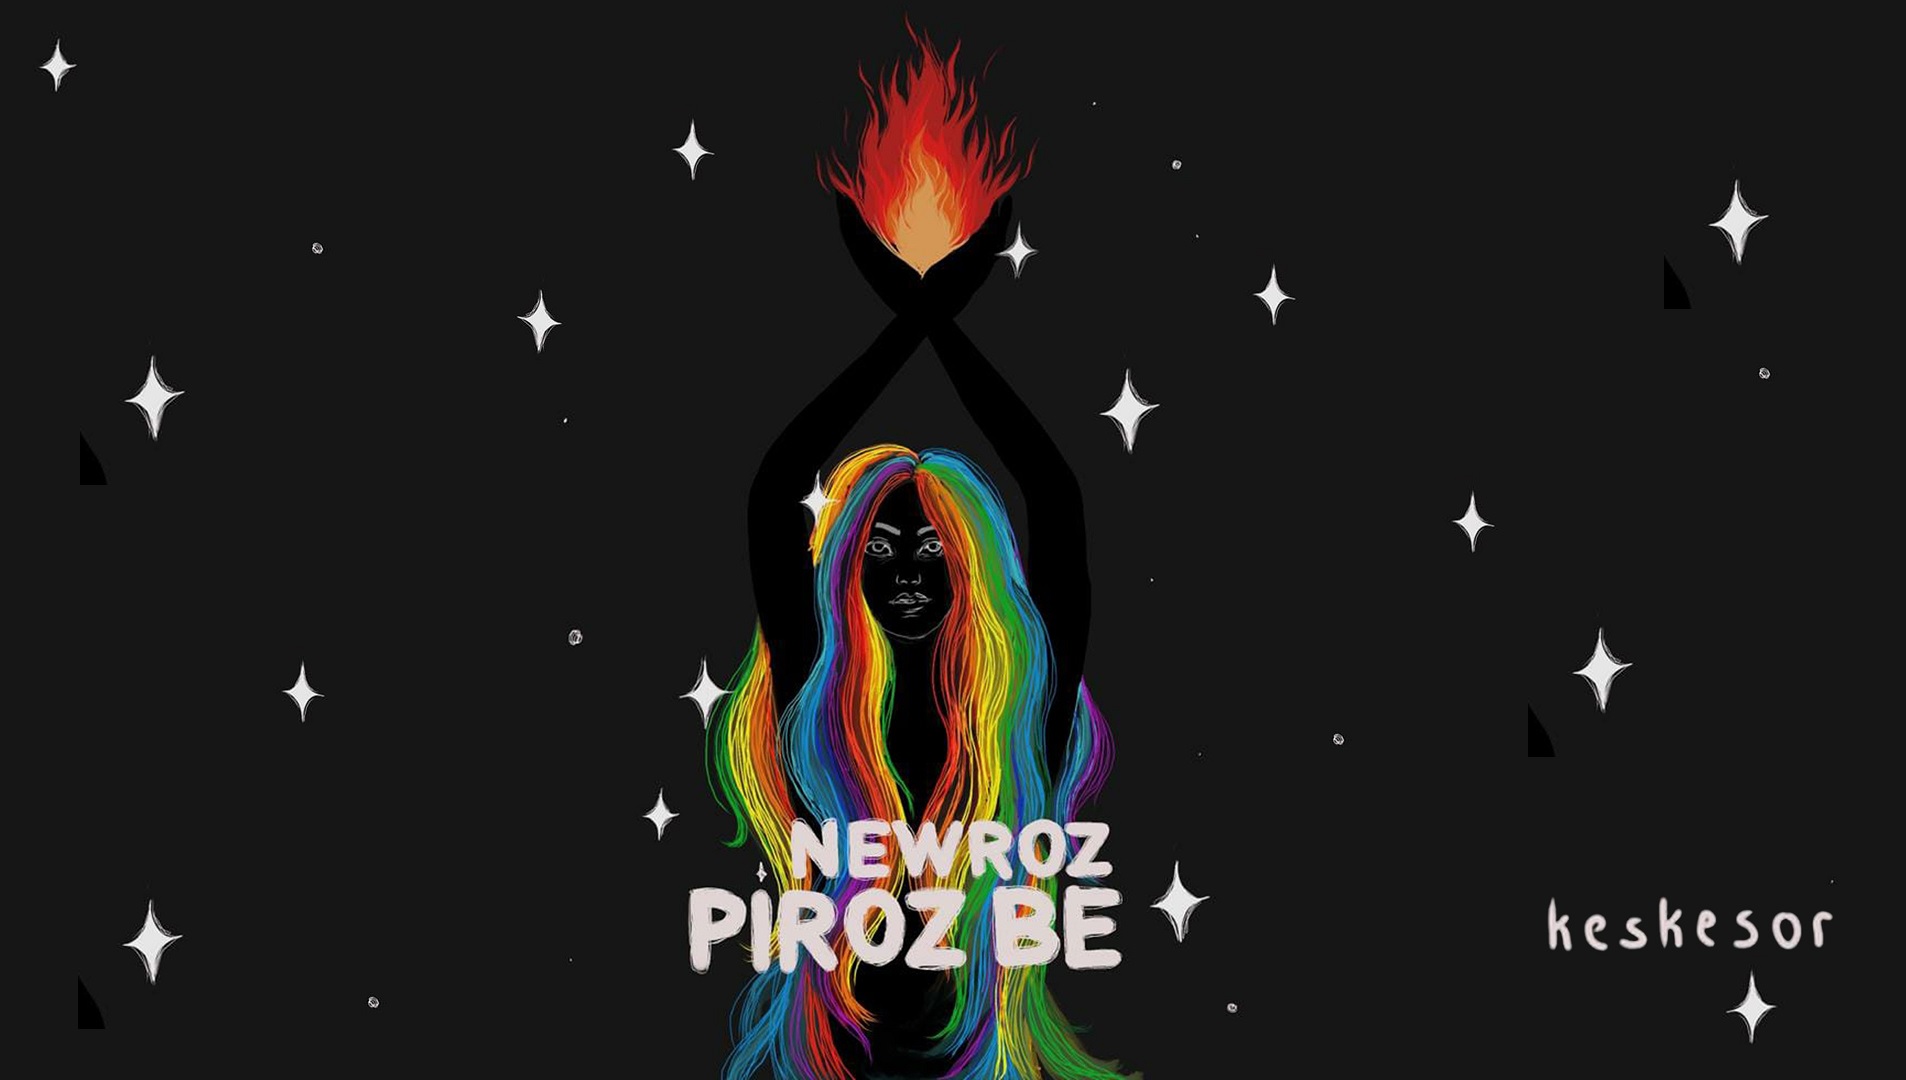 Keskesor Amed, Newroz kortejine çağırıyor Kaos GL - LGBTİ+ Haber Portalı